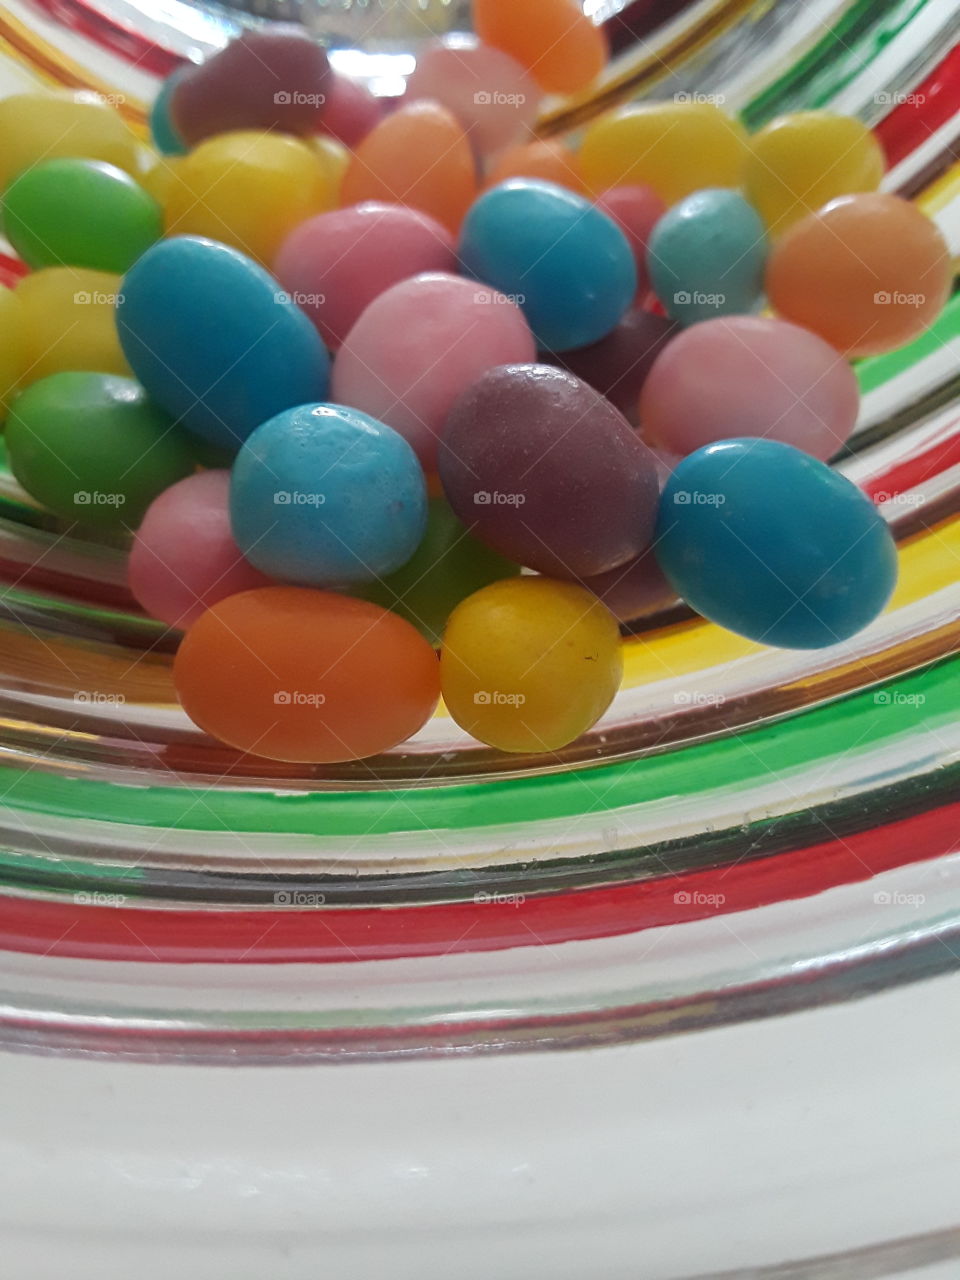 SweetTart Jellybeans